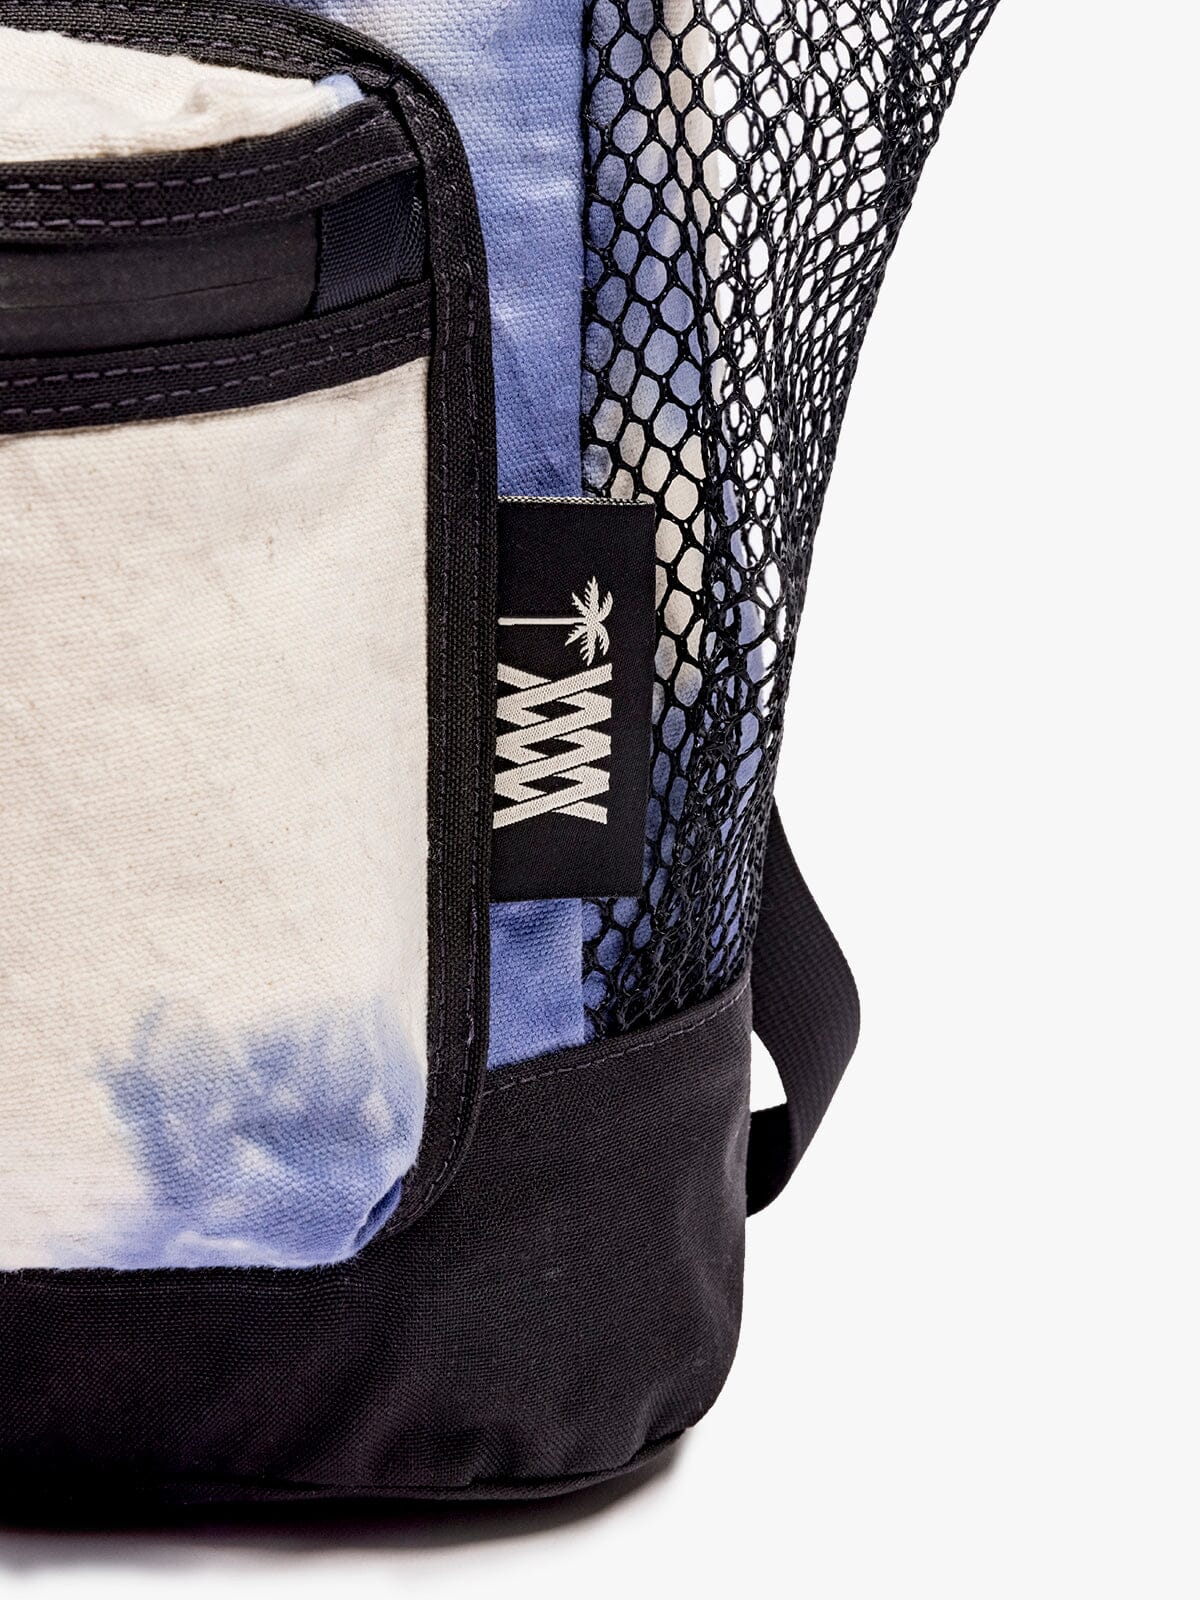 MW x ASP Stratus Ruck by Mission Workshop - Weerbestendige tassen & technische kleding - San Francisco & Los Angeles - Gemaakt om te doorstaan - Voor altijd gegarandeerd